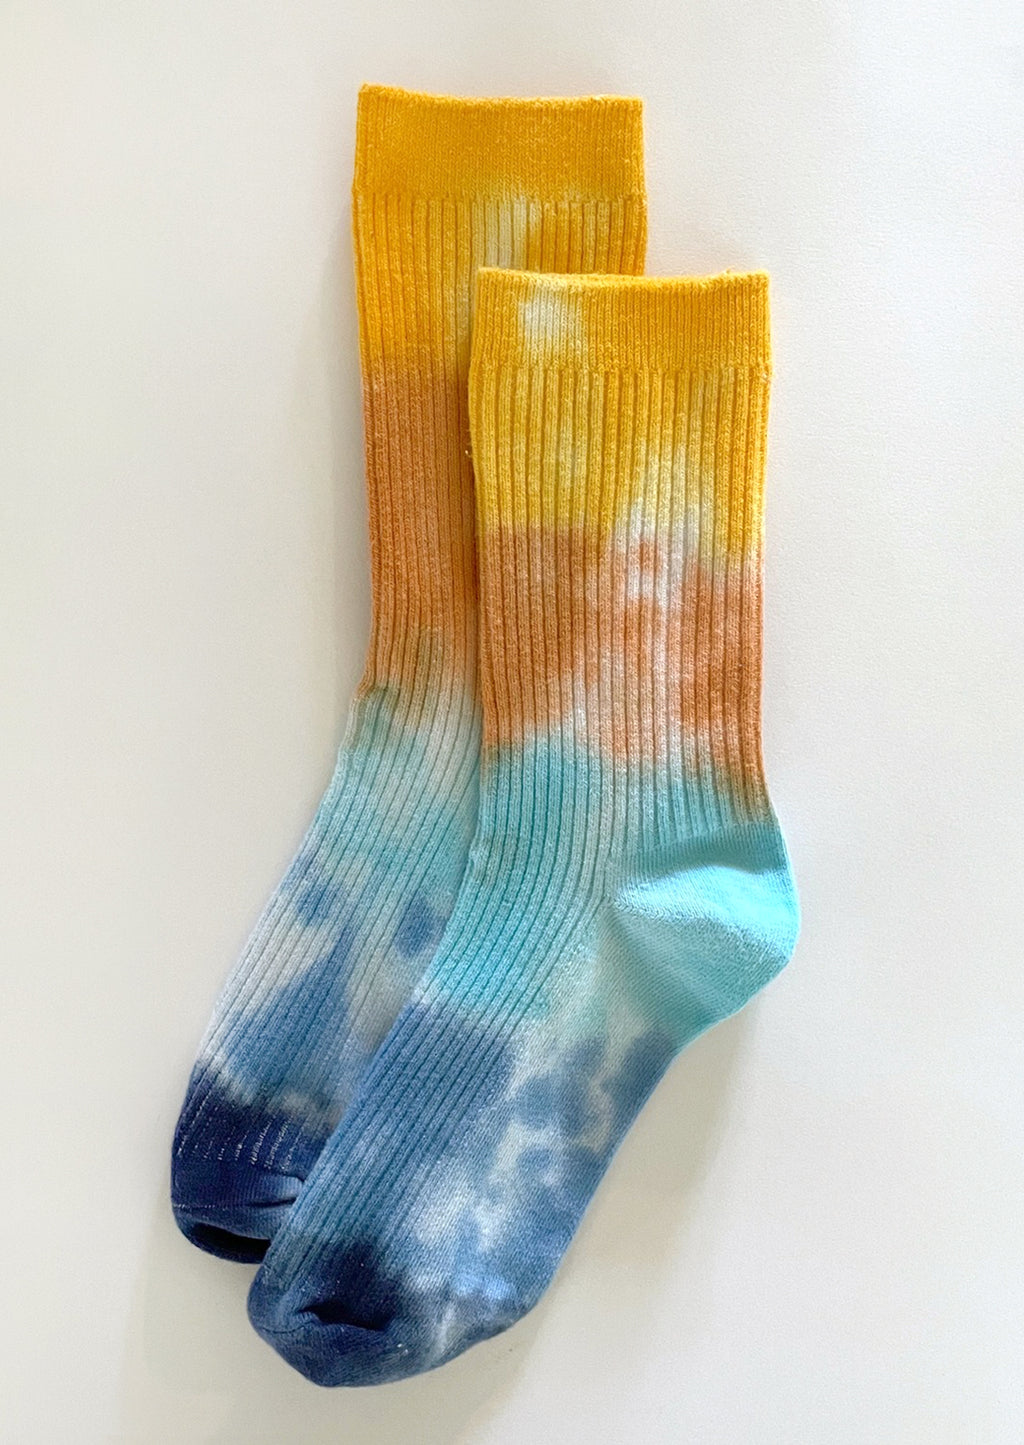 Ocean Avenue: A pair of tie dye socks in yellow, orange and blue.